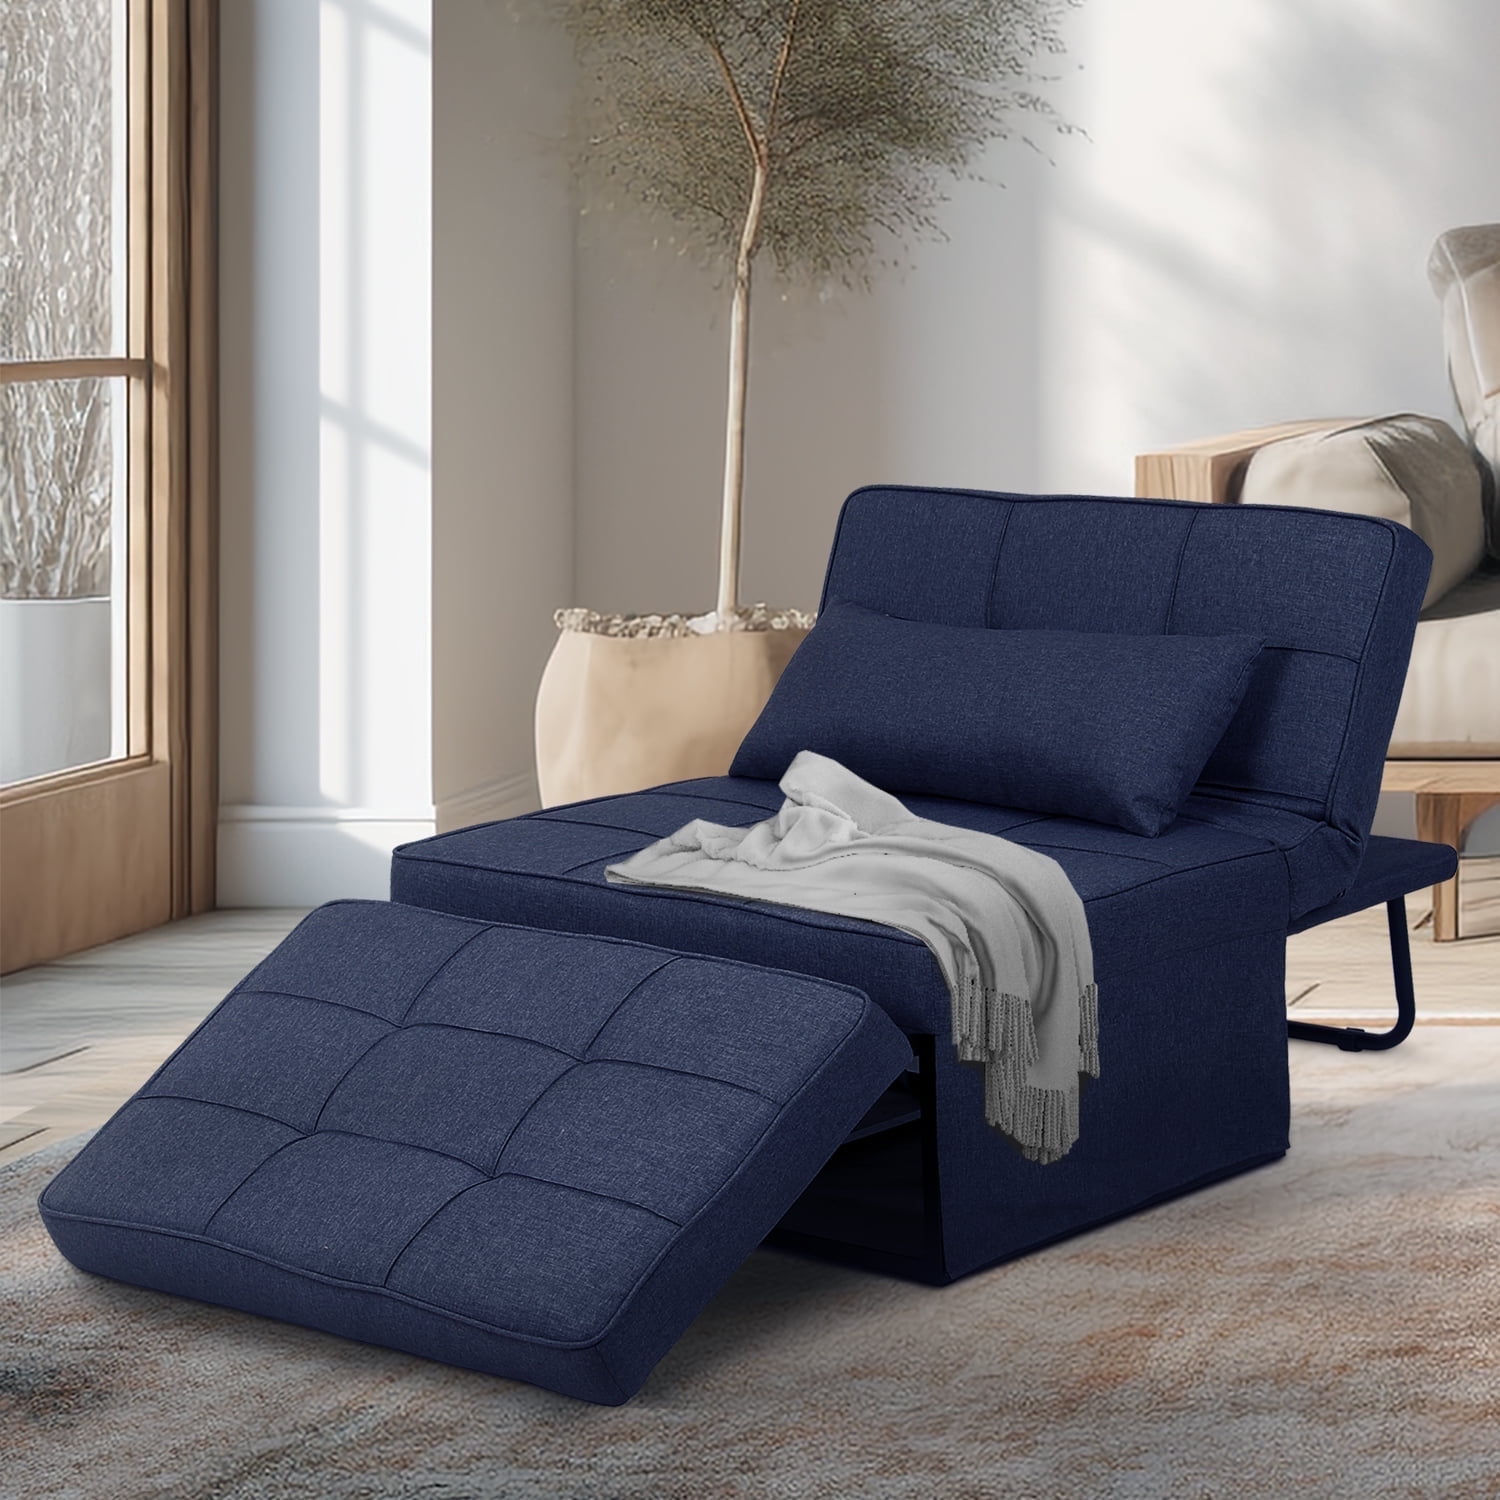 Ainfox Folding Sofa Bed, Convertible Ottoman Chair Chaise Sofa 